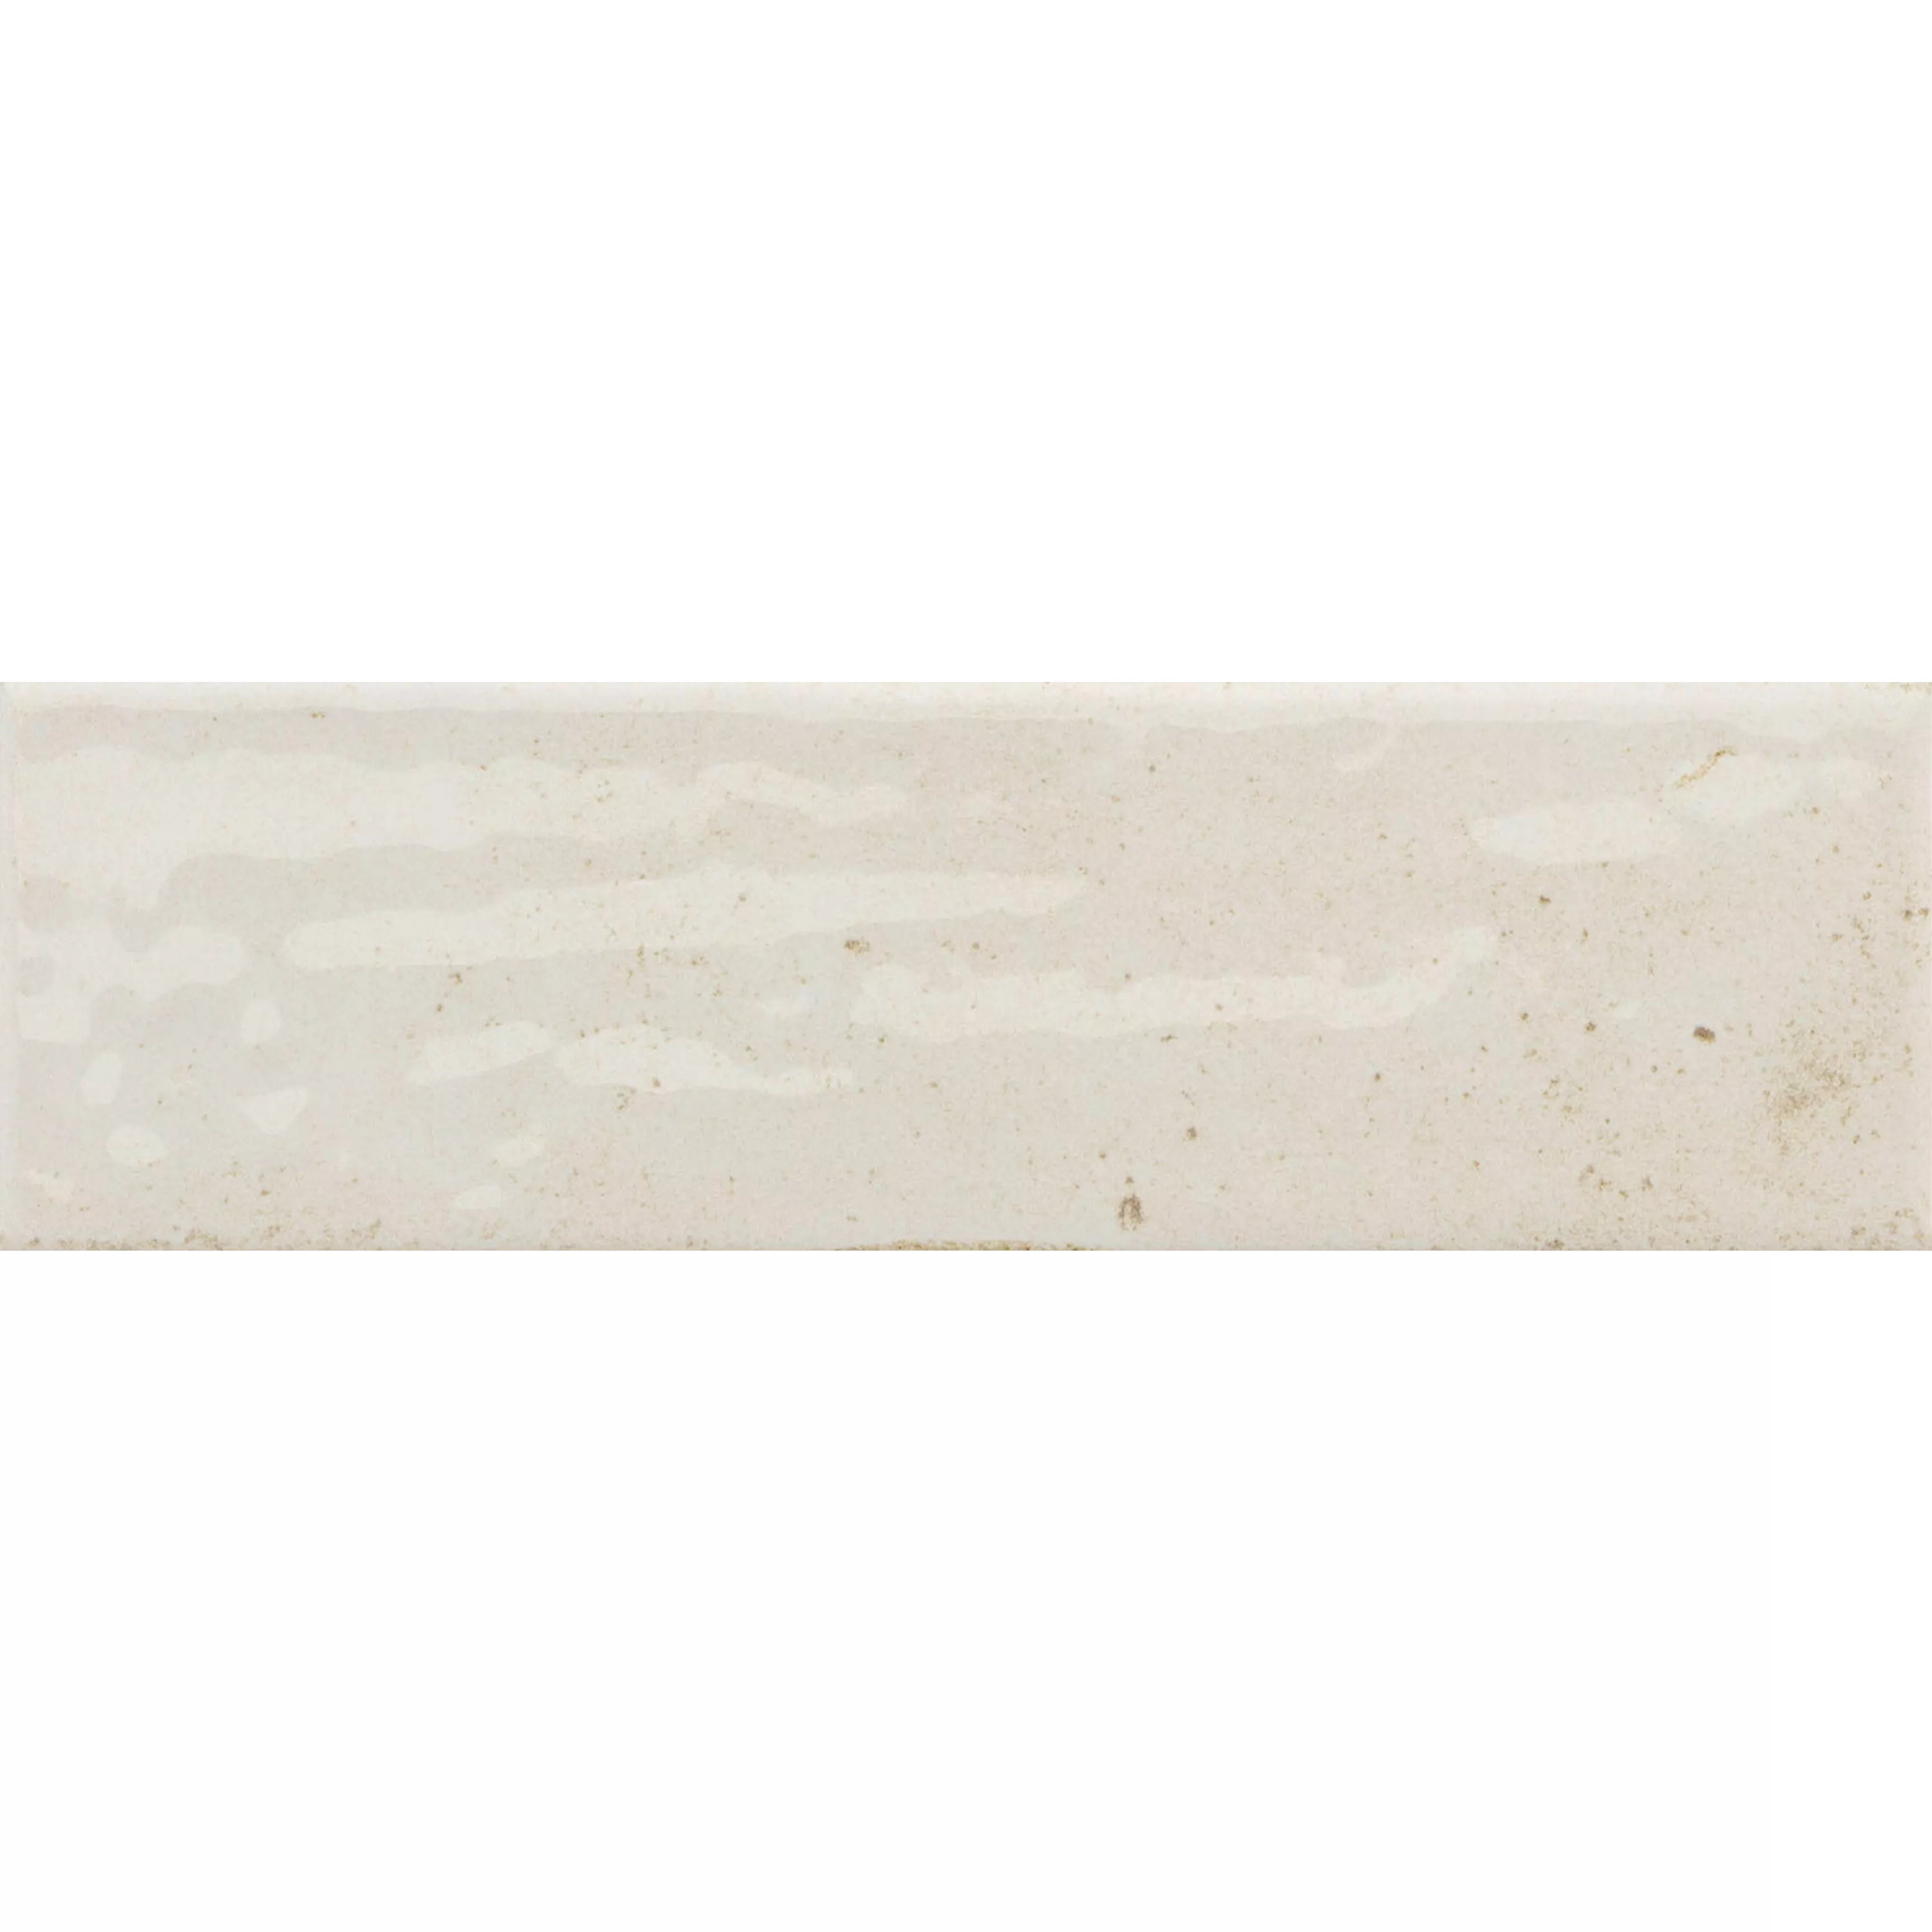 Próbka Płytki Ścienne Arosa Błyszczący Karbowany Biały 6x25cm